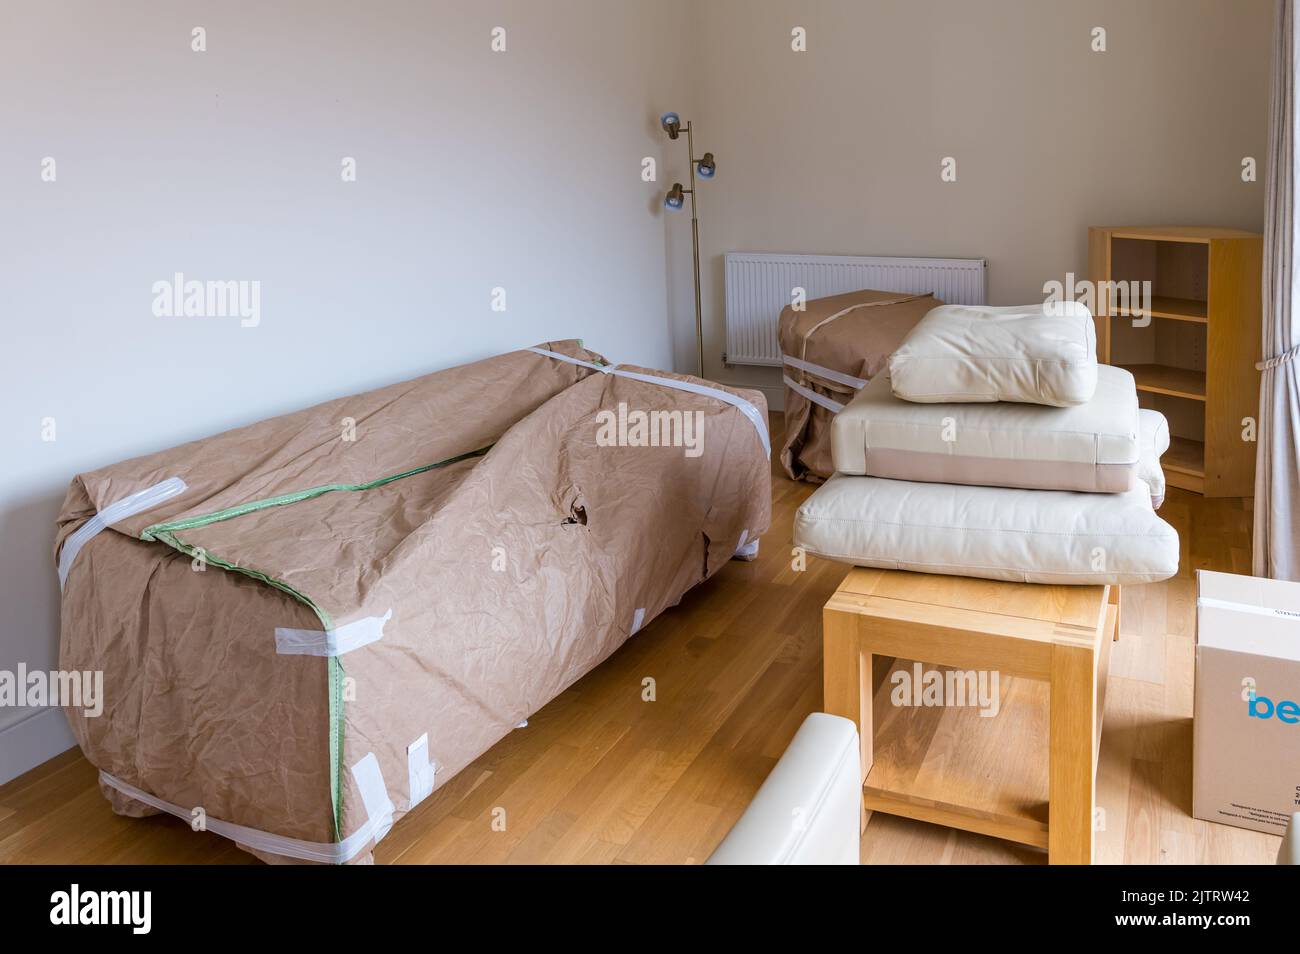 Imballaggio e spostamento casa con divano e poltrona mobili avvolti in salotto, Scozia, Regno Unito Foto Stock